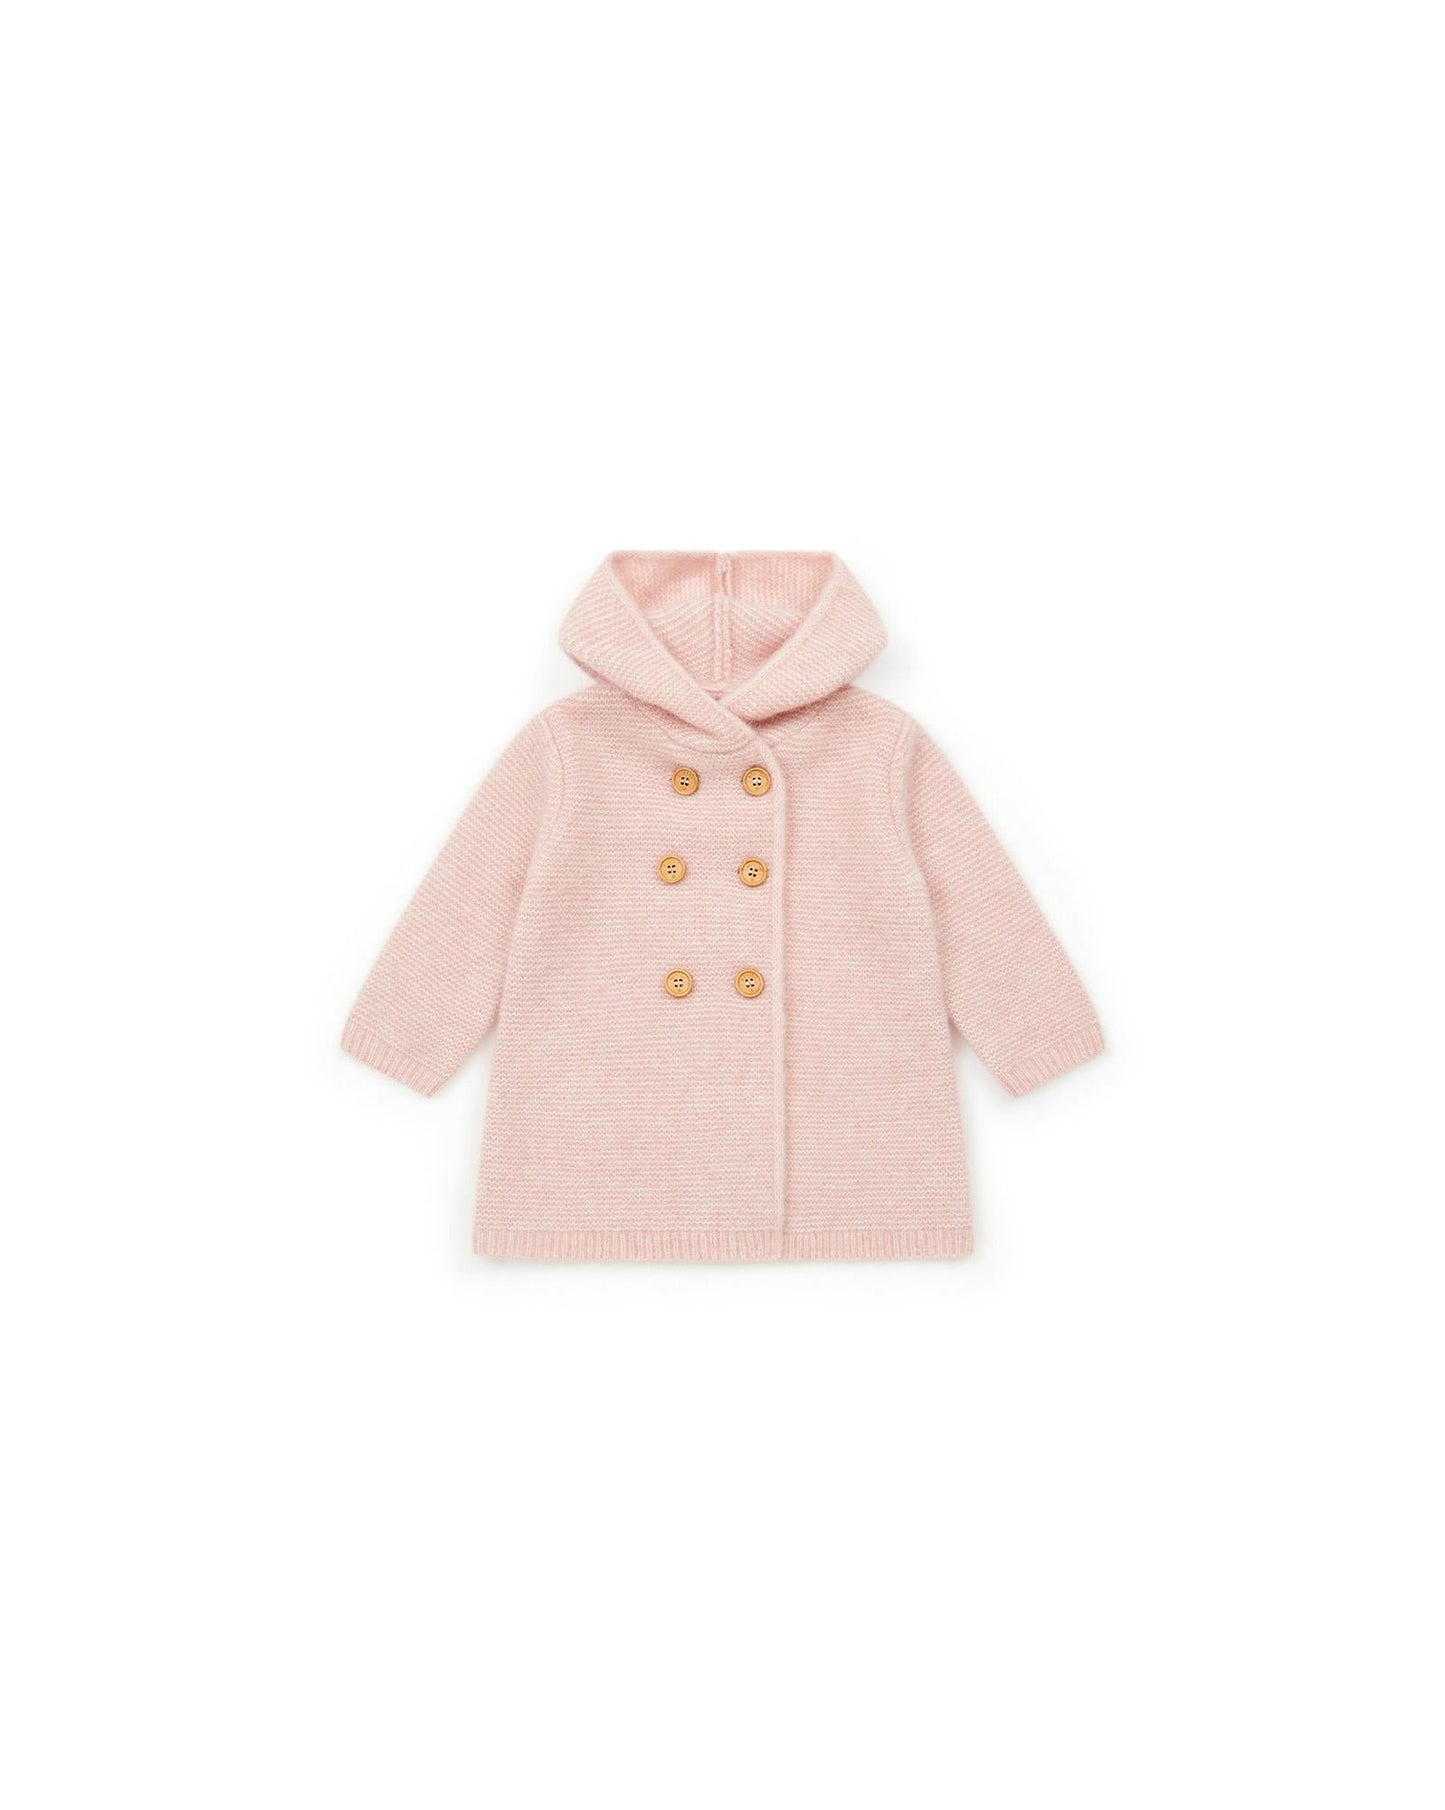 Coat Miro Pink Baby In knitting foam point